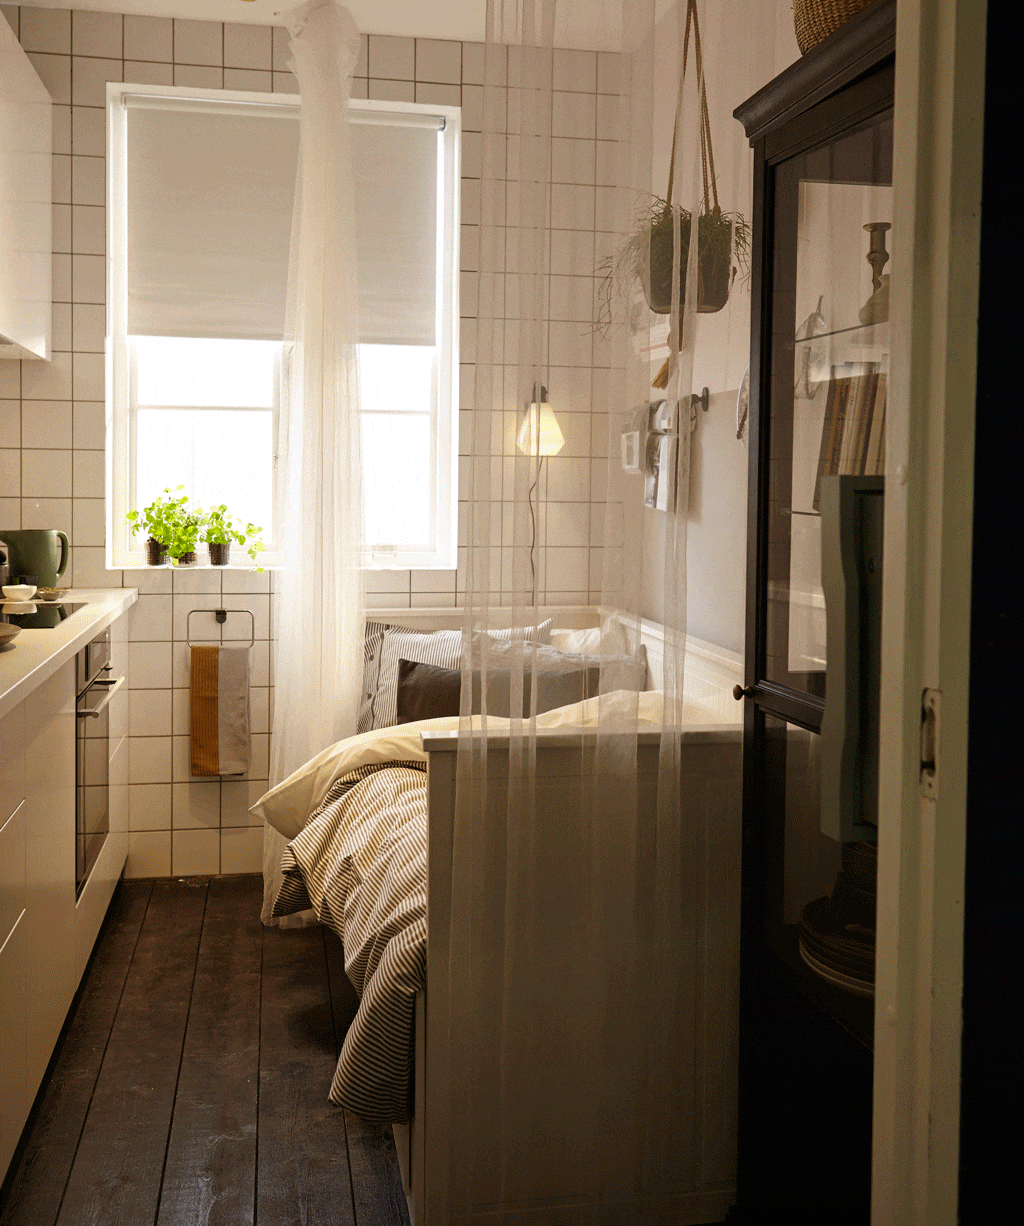 Μικρή κουζίνα με χώρο ύπνου - καναπές Hemnes από την Ikea